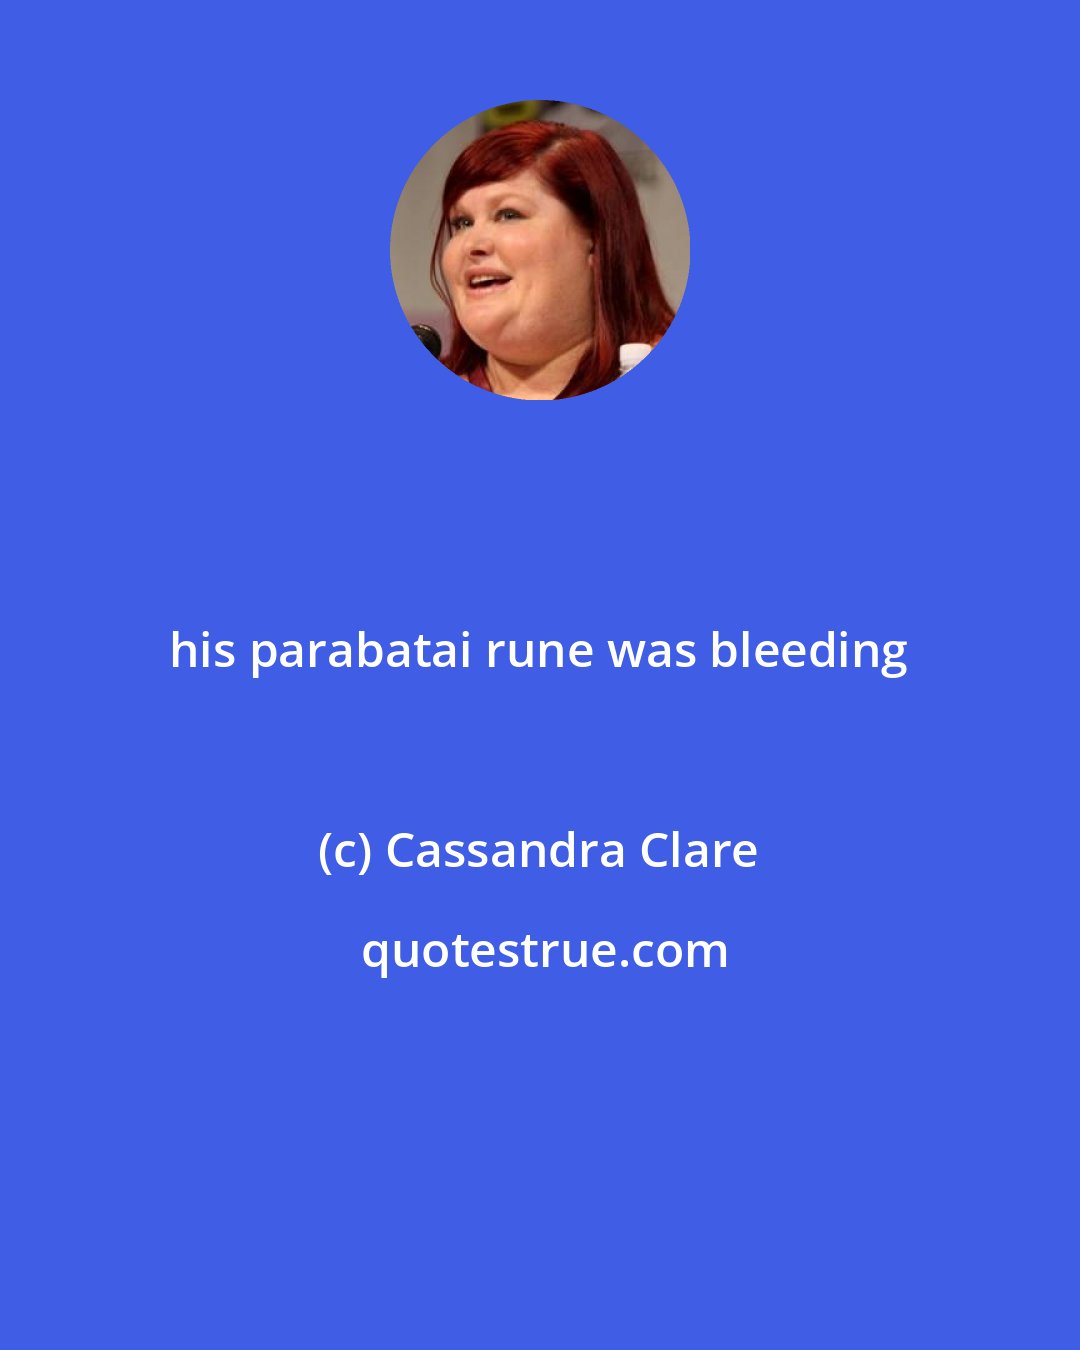 Cassandra Clare: his parabatai rune was bleeding